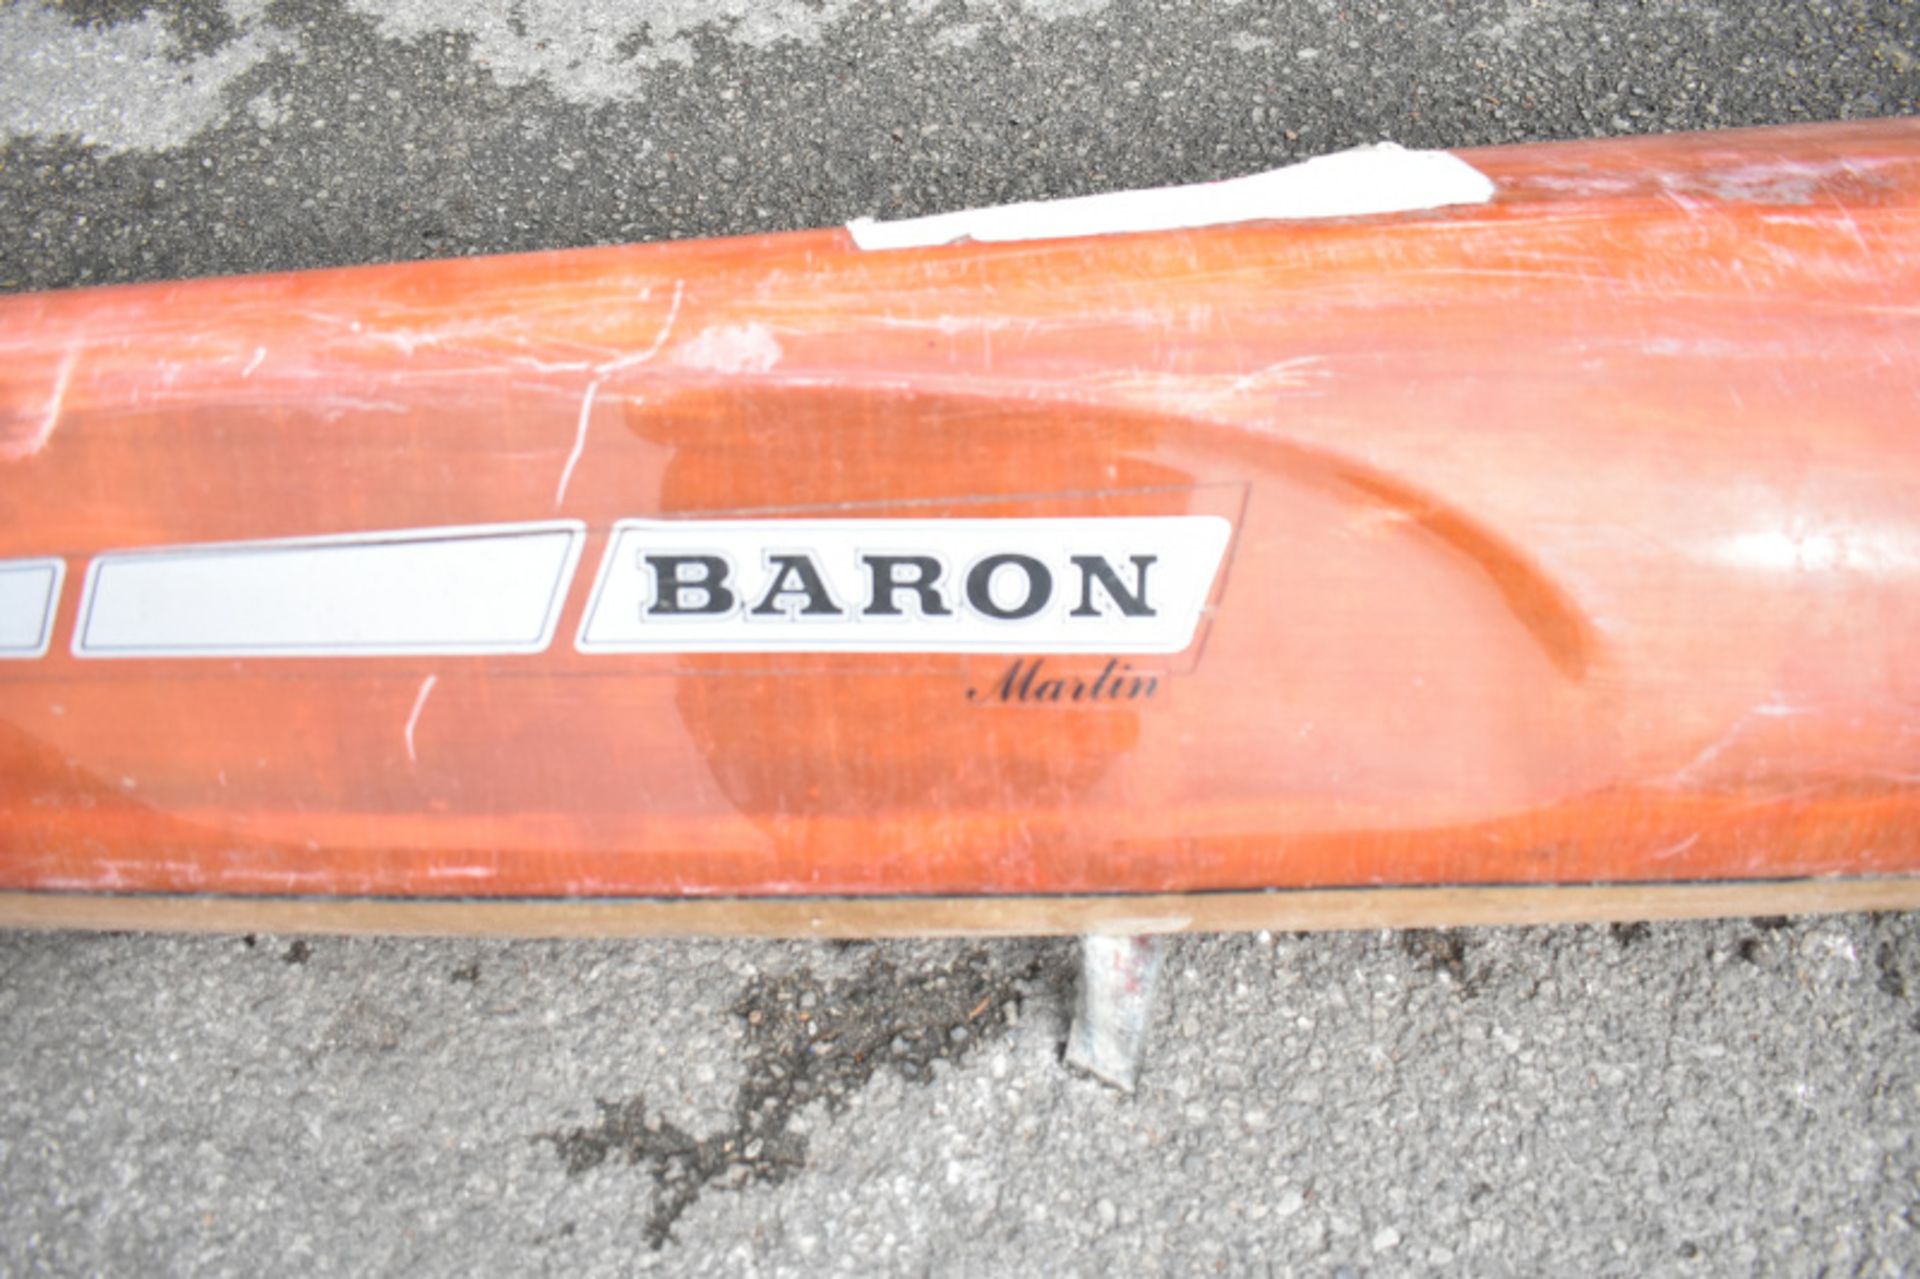 Baron Marlin Kayak - orange - no paddles - Image 2 of 13